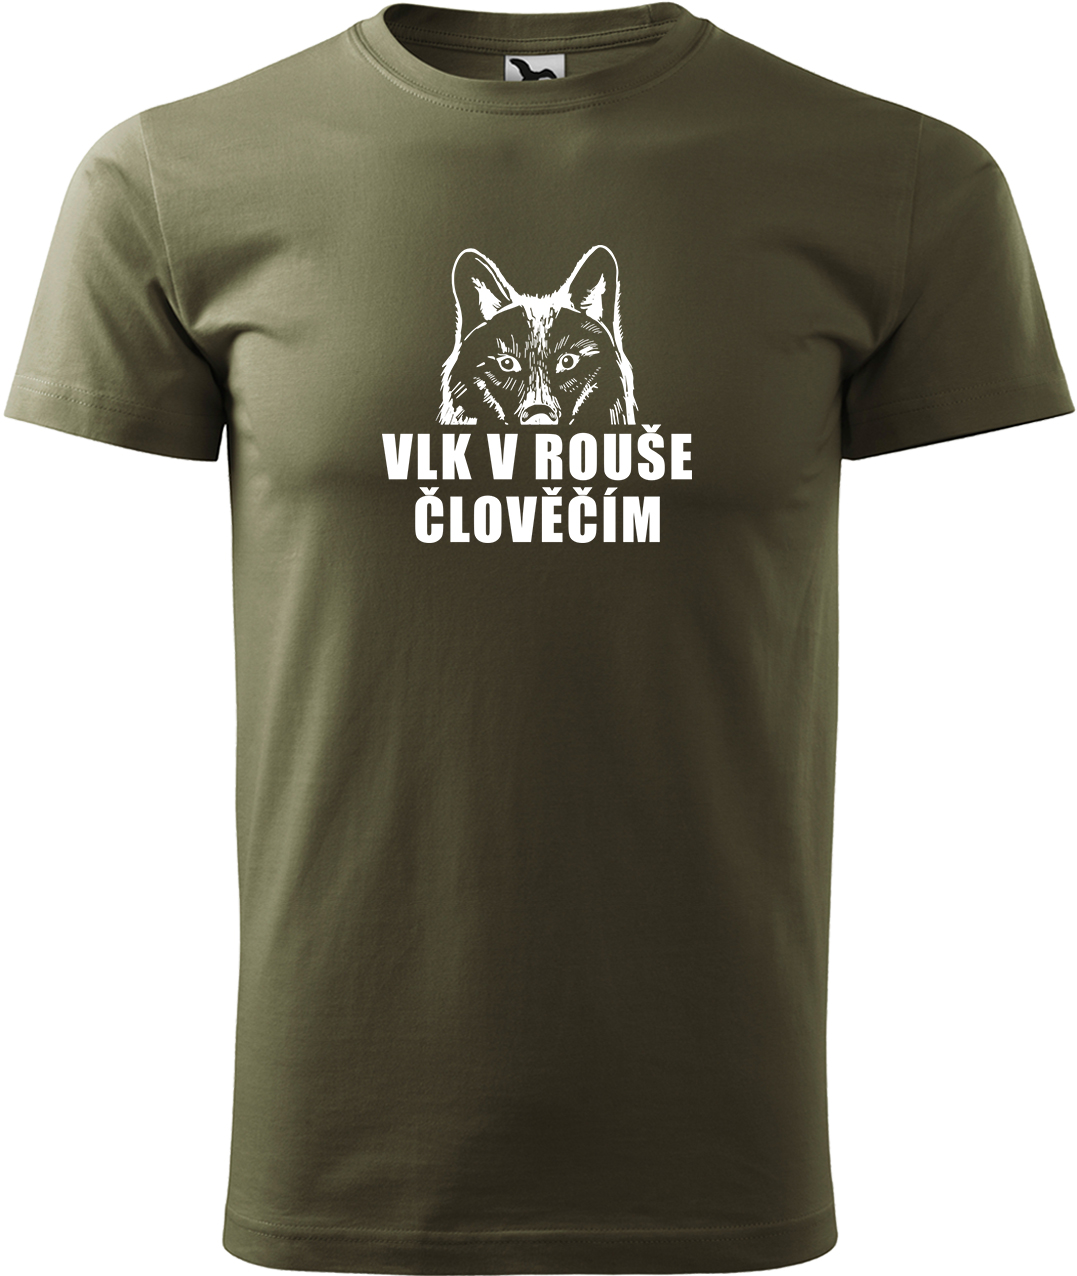 Pánské tričko s vlkem - Vlk v rouše člověčím Velikost: S, Barva: Military (69), Střih: pánský